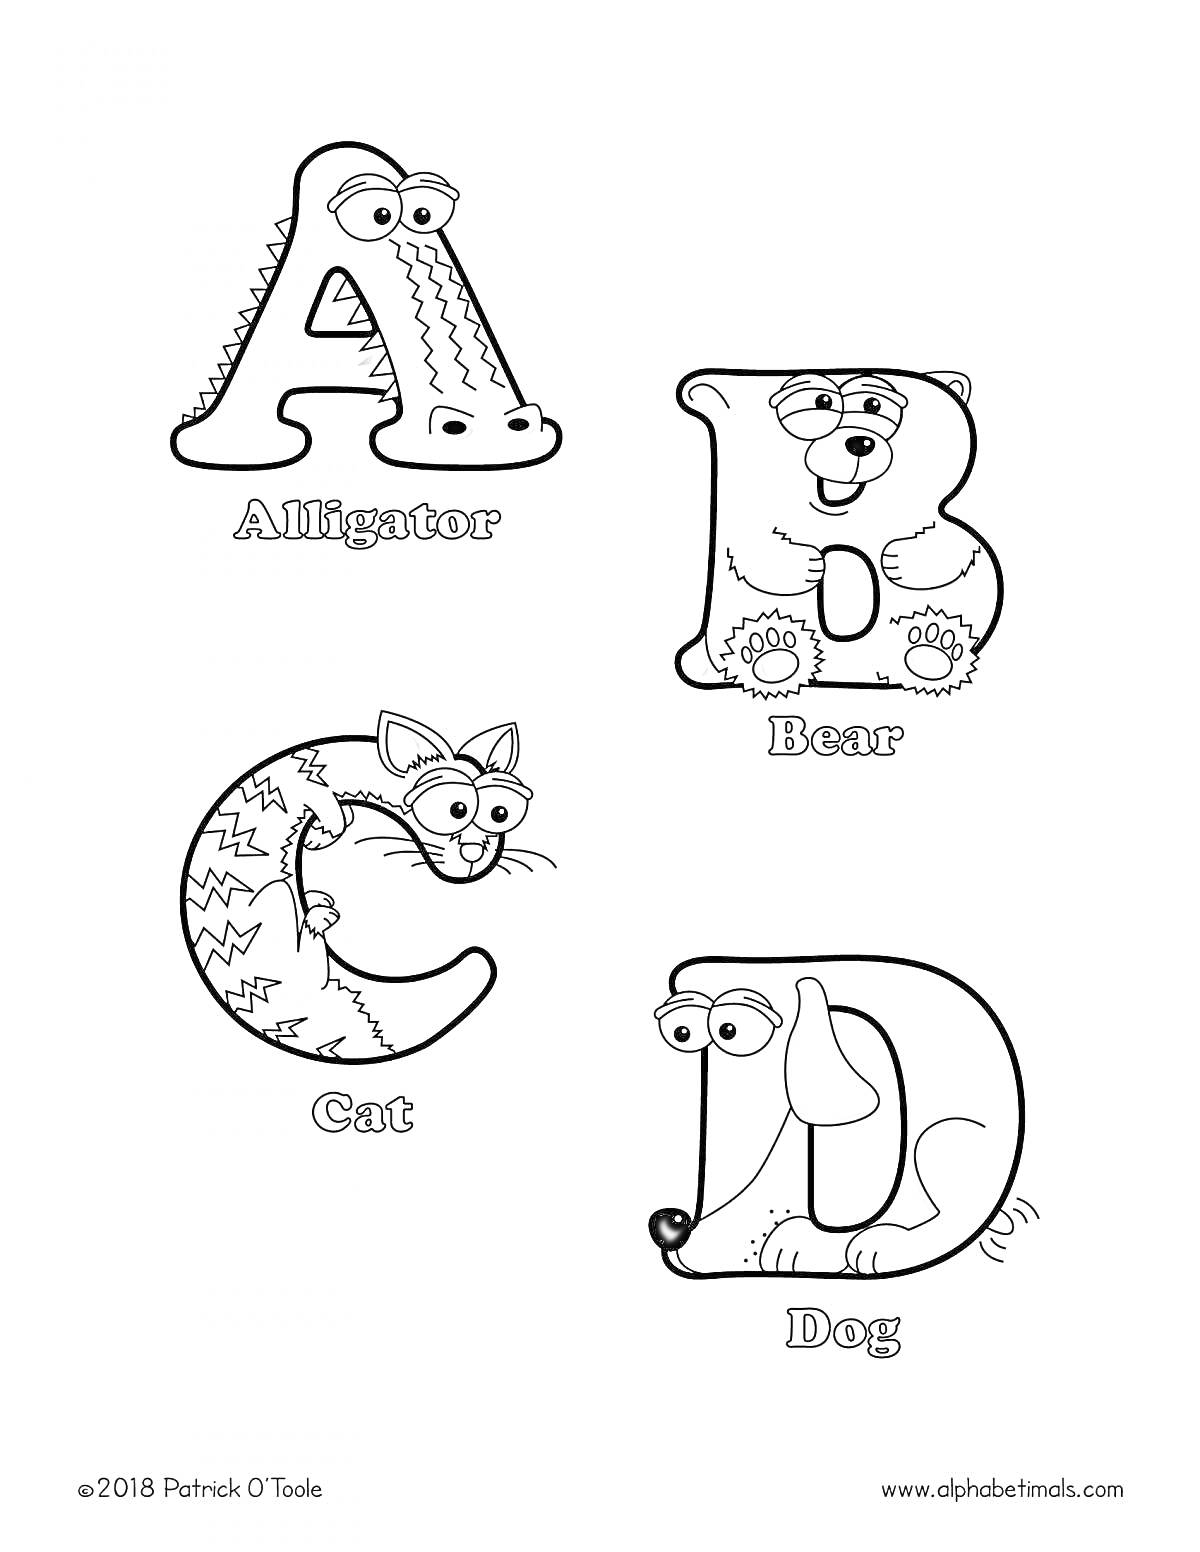 Раскраска Английский алфавит с животными - А (Alligator), B (Bear), C (Cat), D (Dog)